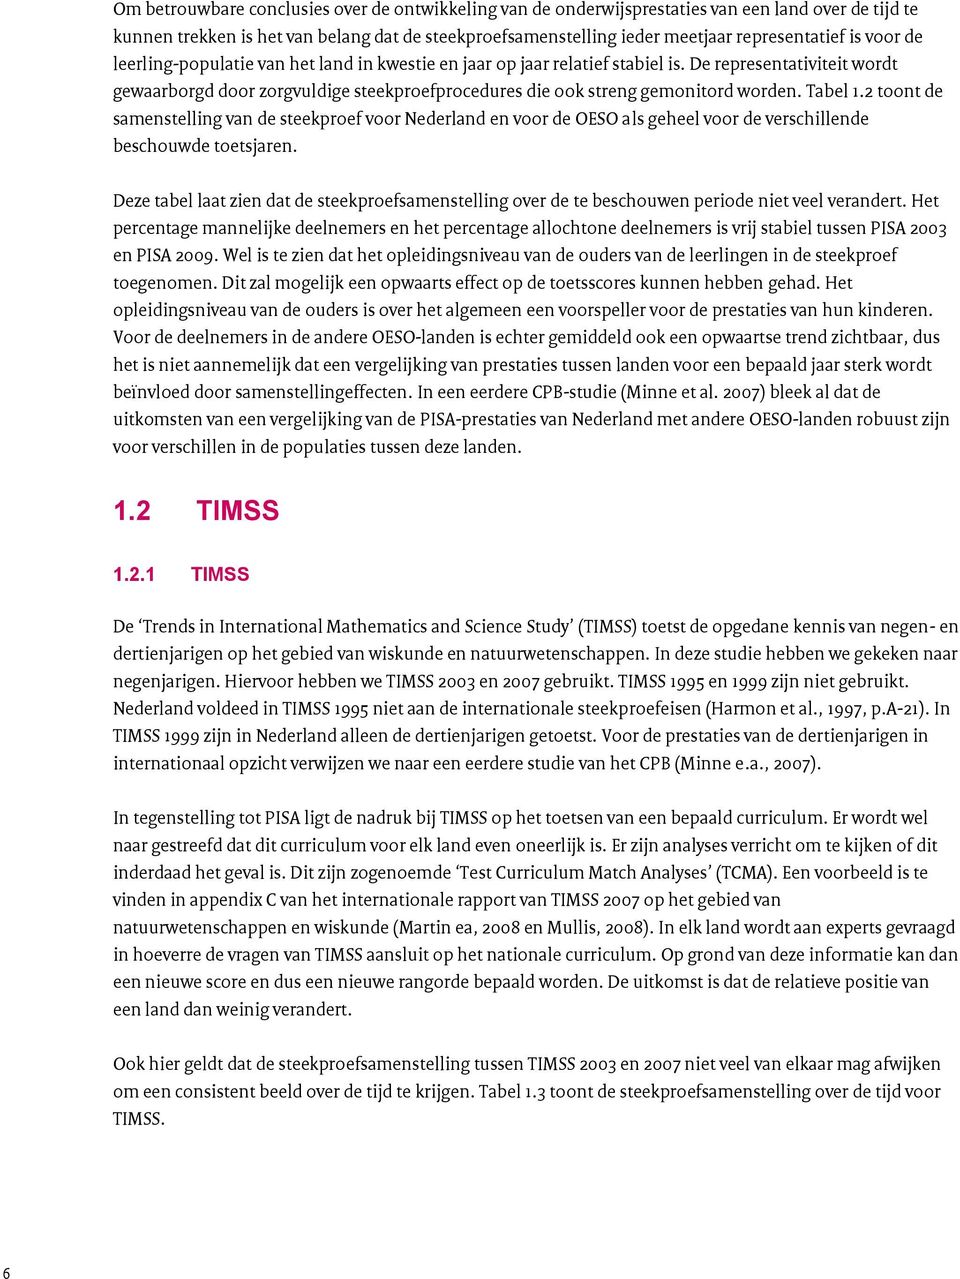 Tabel 1.2 toont de samenstelling van de steekproef voor Nederland en voor de OESO als geheel voor de verschillende beschouwde toetsjaren.